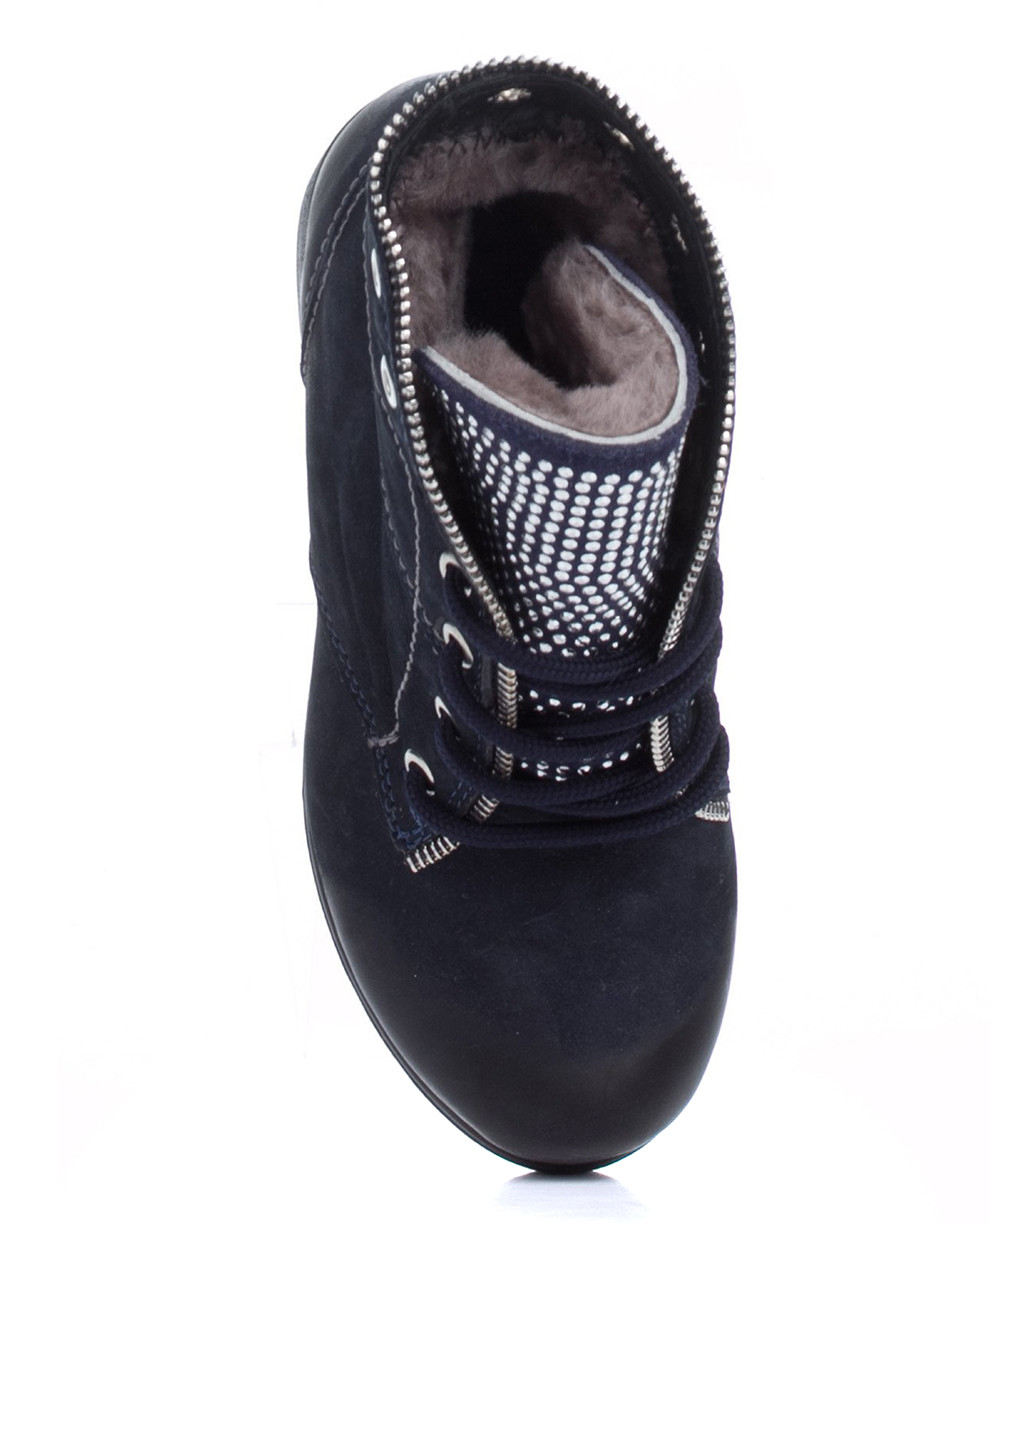 Зимние ботинки Maxima со стразами, с молнией из натуральной замши